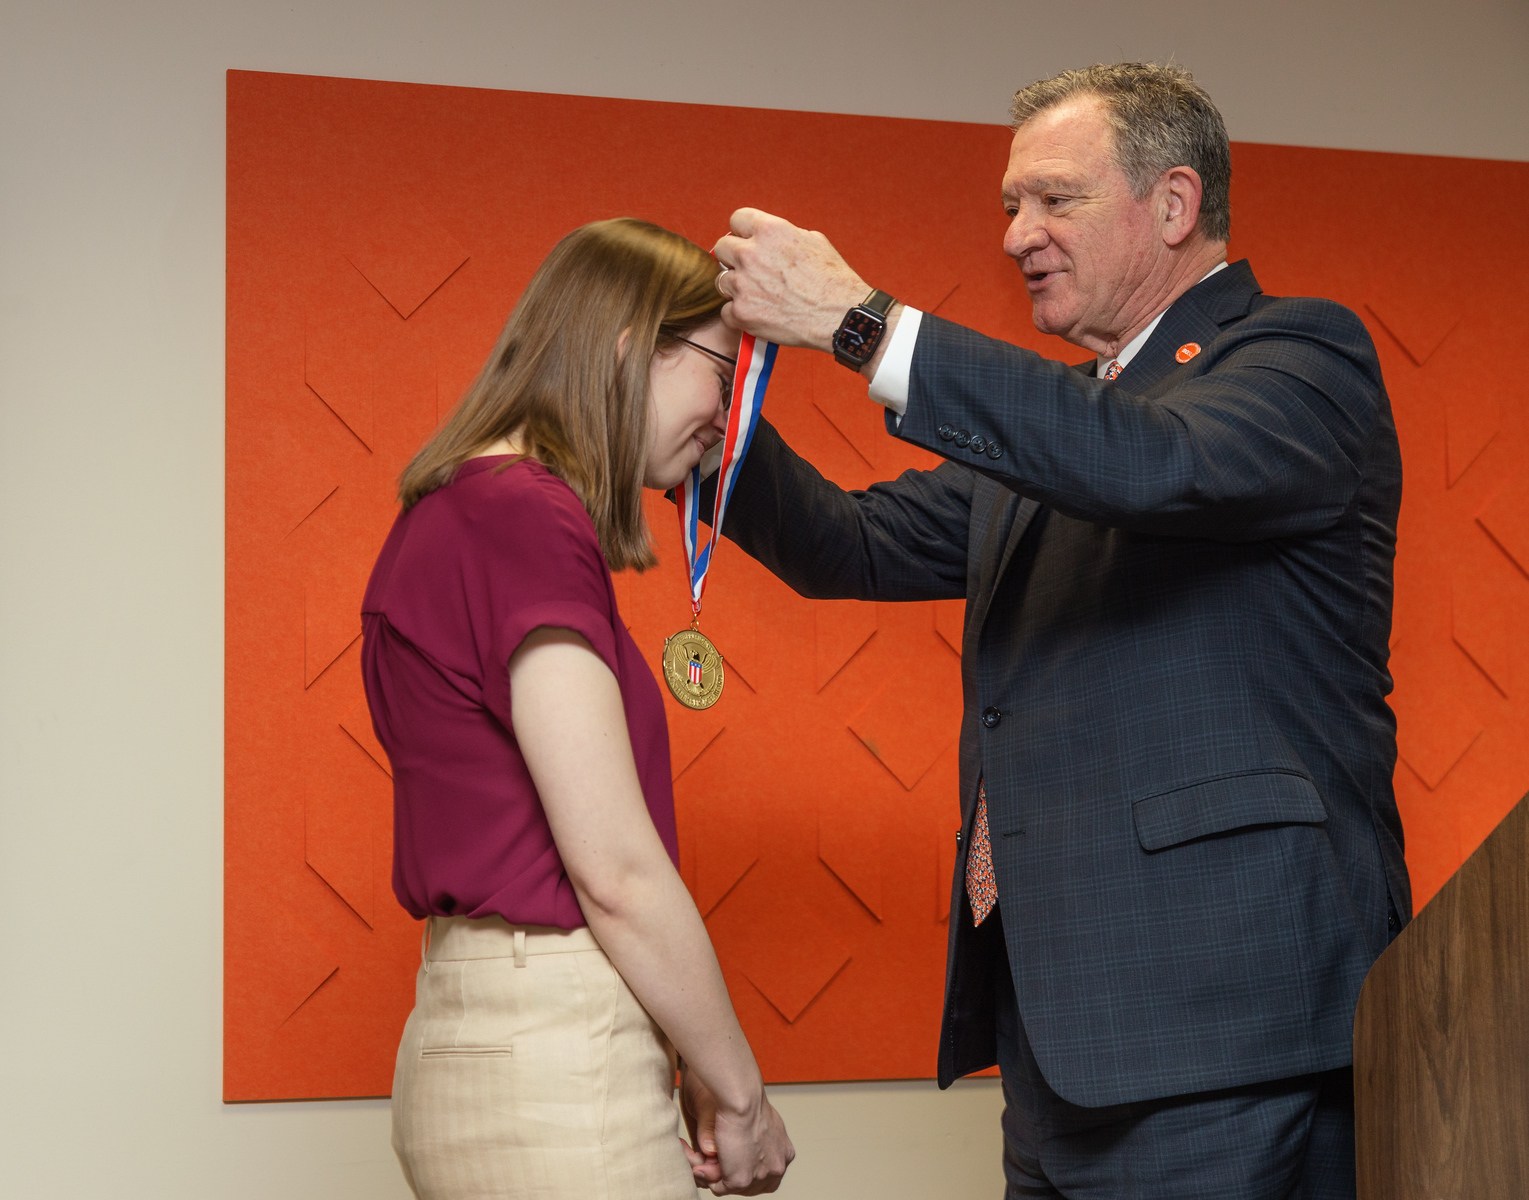 BGSU President Rodney K. Rogers presenting a medal to Christina Igl.